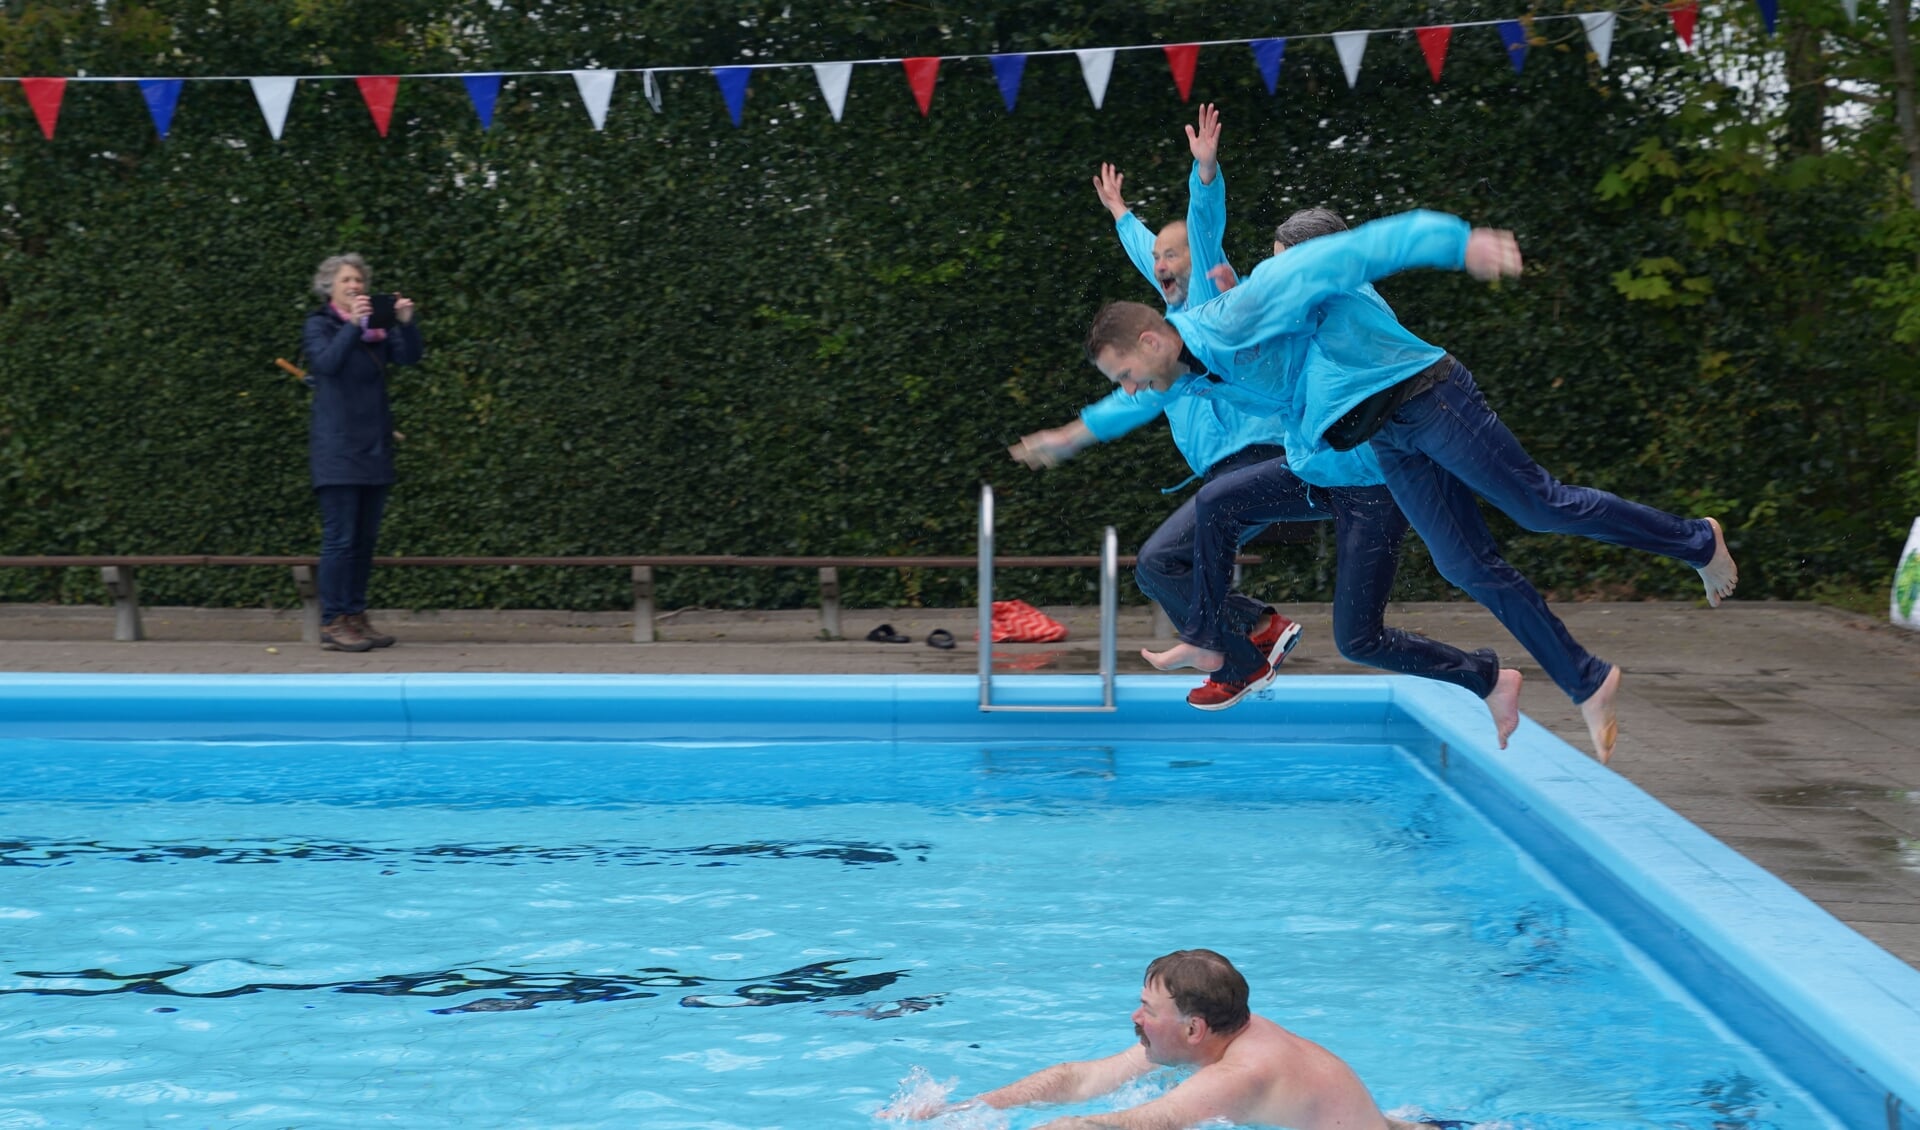 De bestuursleden van Stichting Swim! heropenden het zwembad in Gytsjerk met een vrolijke duik in het water.